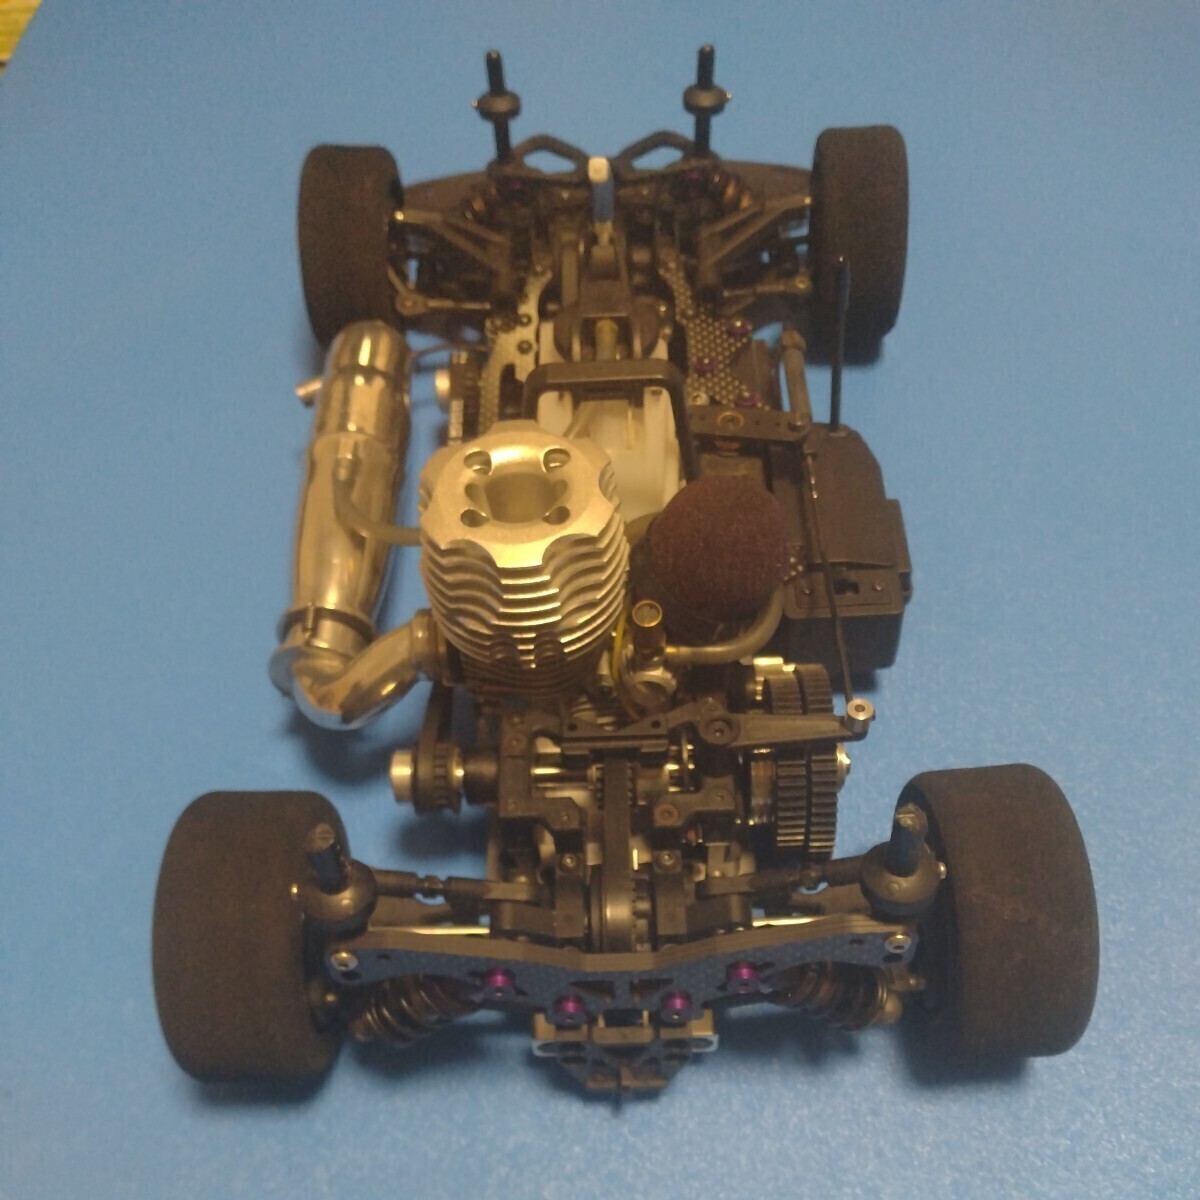  двигатель машина 1/10 Kyosho R4 двигатель имеется запасной детали имеется 